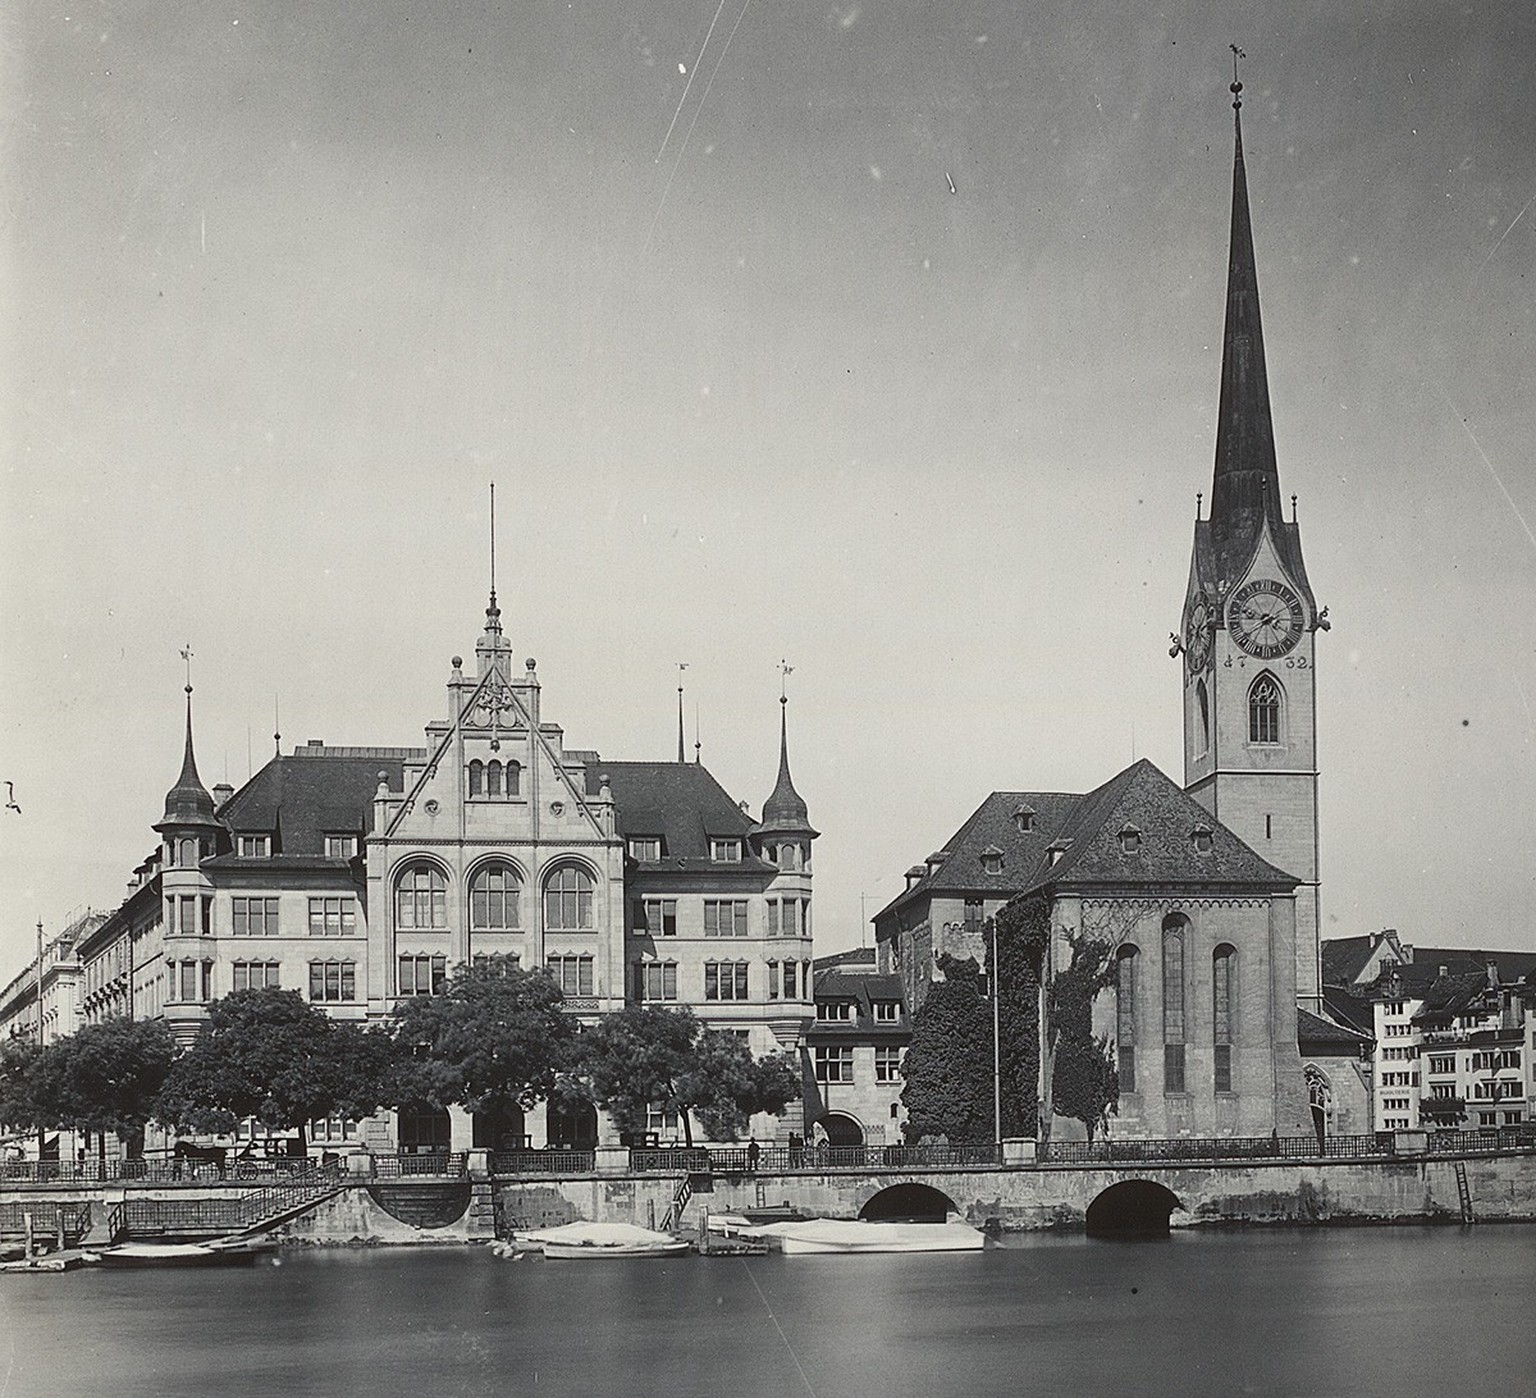 Das von Gull entworfene Zürcher Stadthaus am Standort des ehemaligen Klosters Fraumünster. Aufnahme um 1915.
http://doi.org/10.3932/ethz-a-000015938